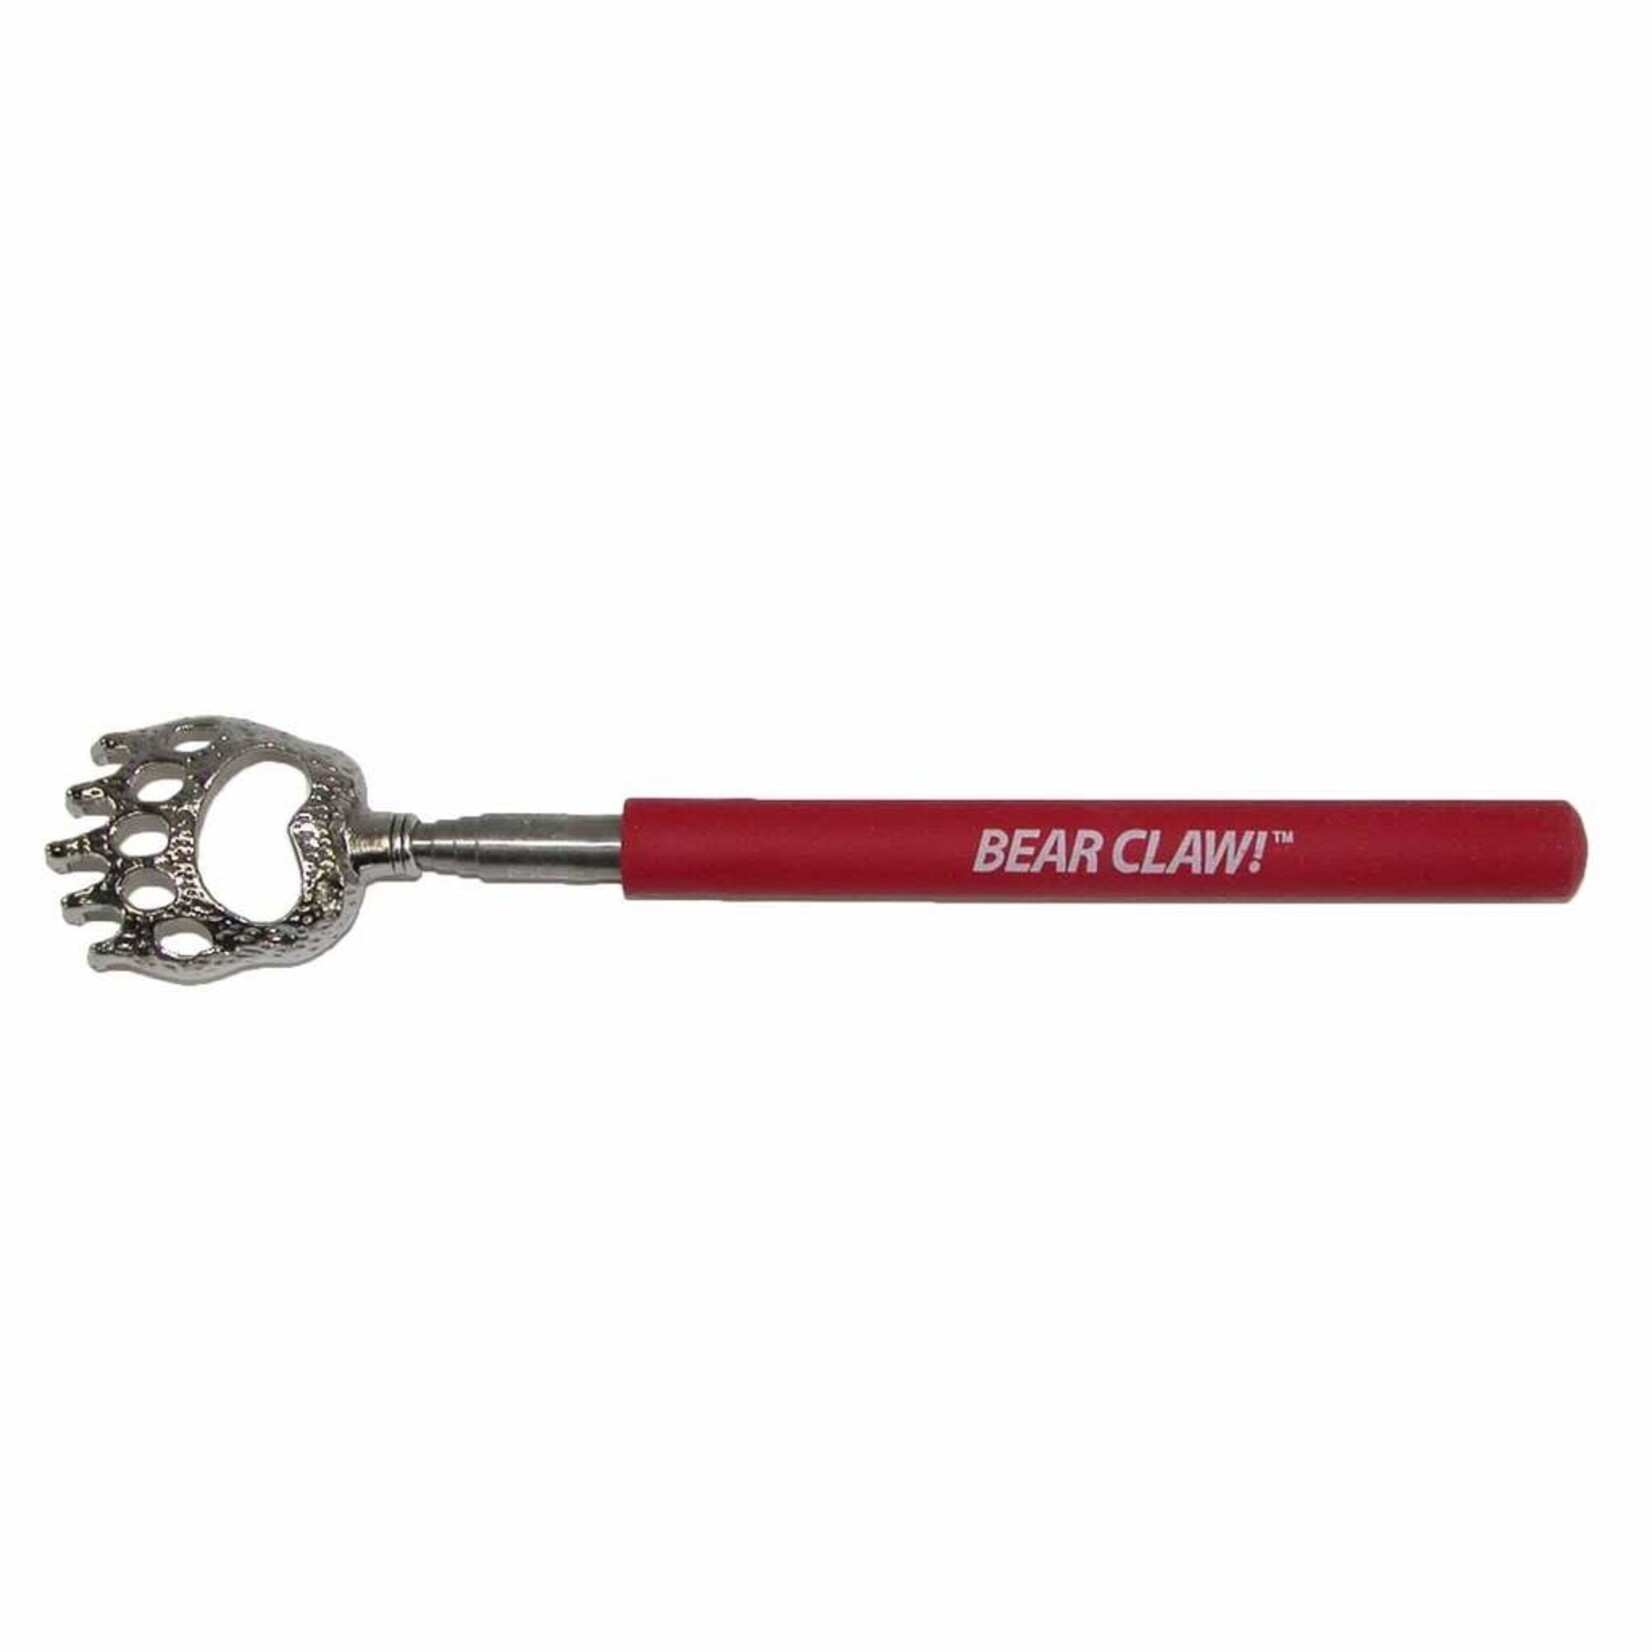 DM Merchandise Bear Claw Backscratcher